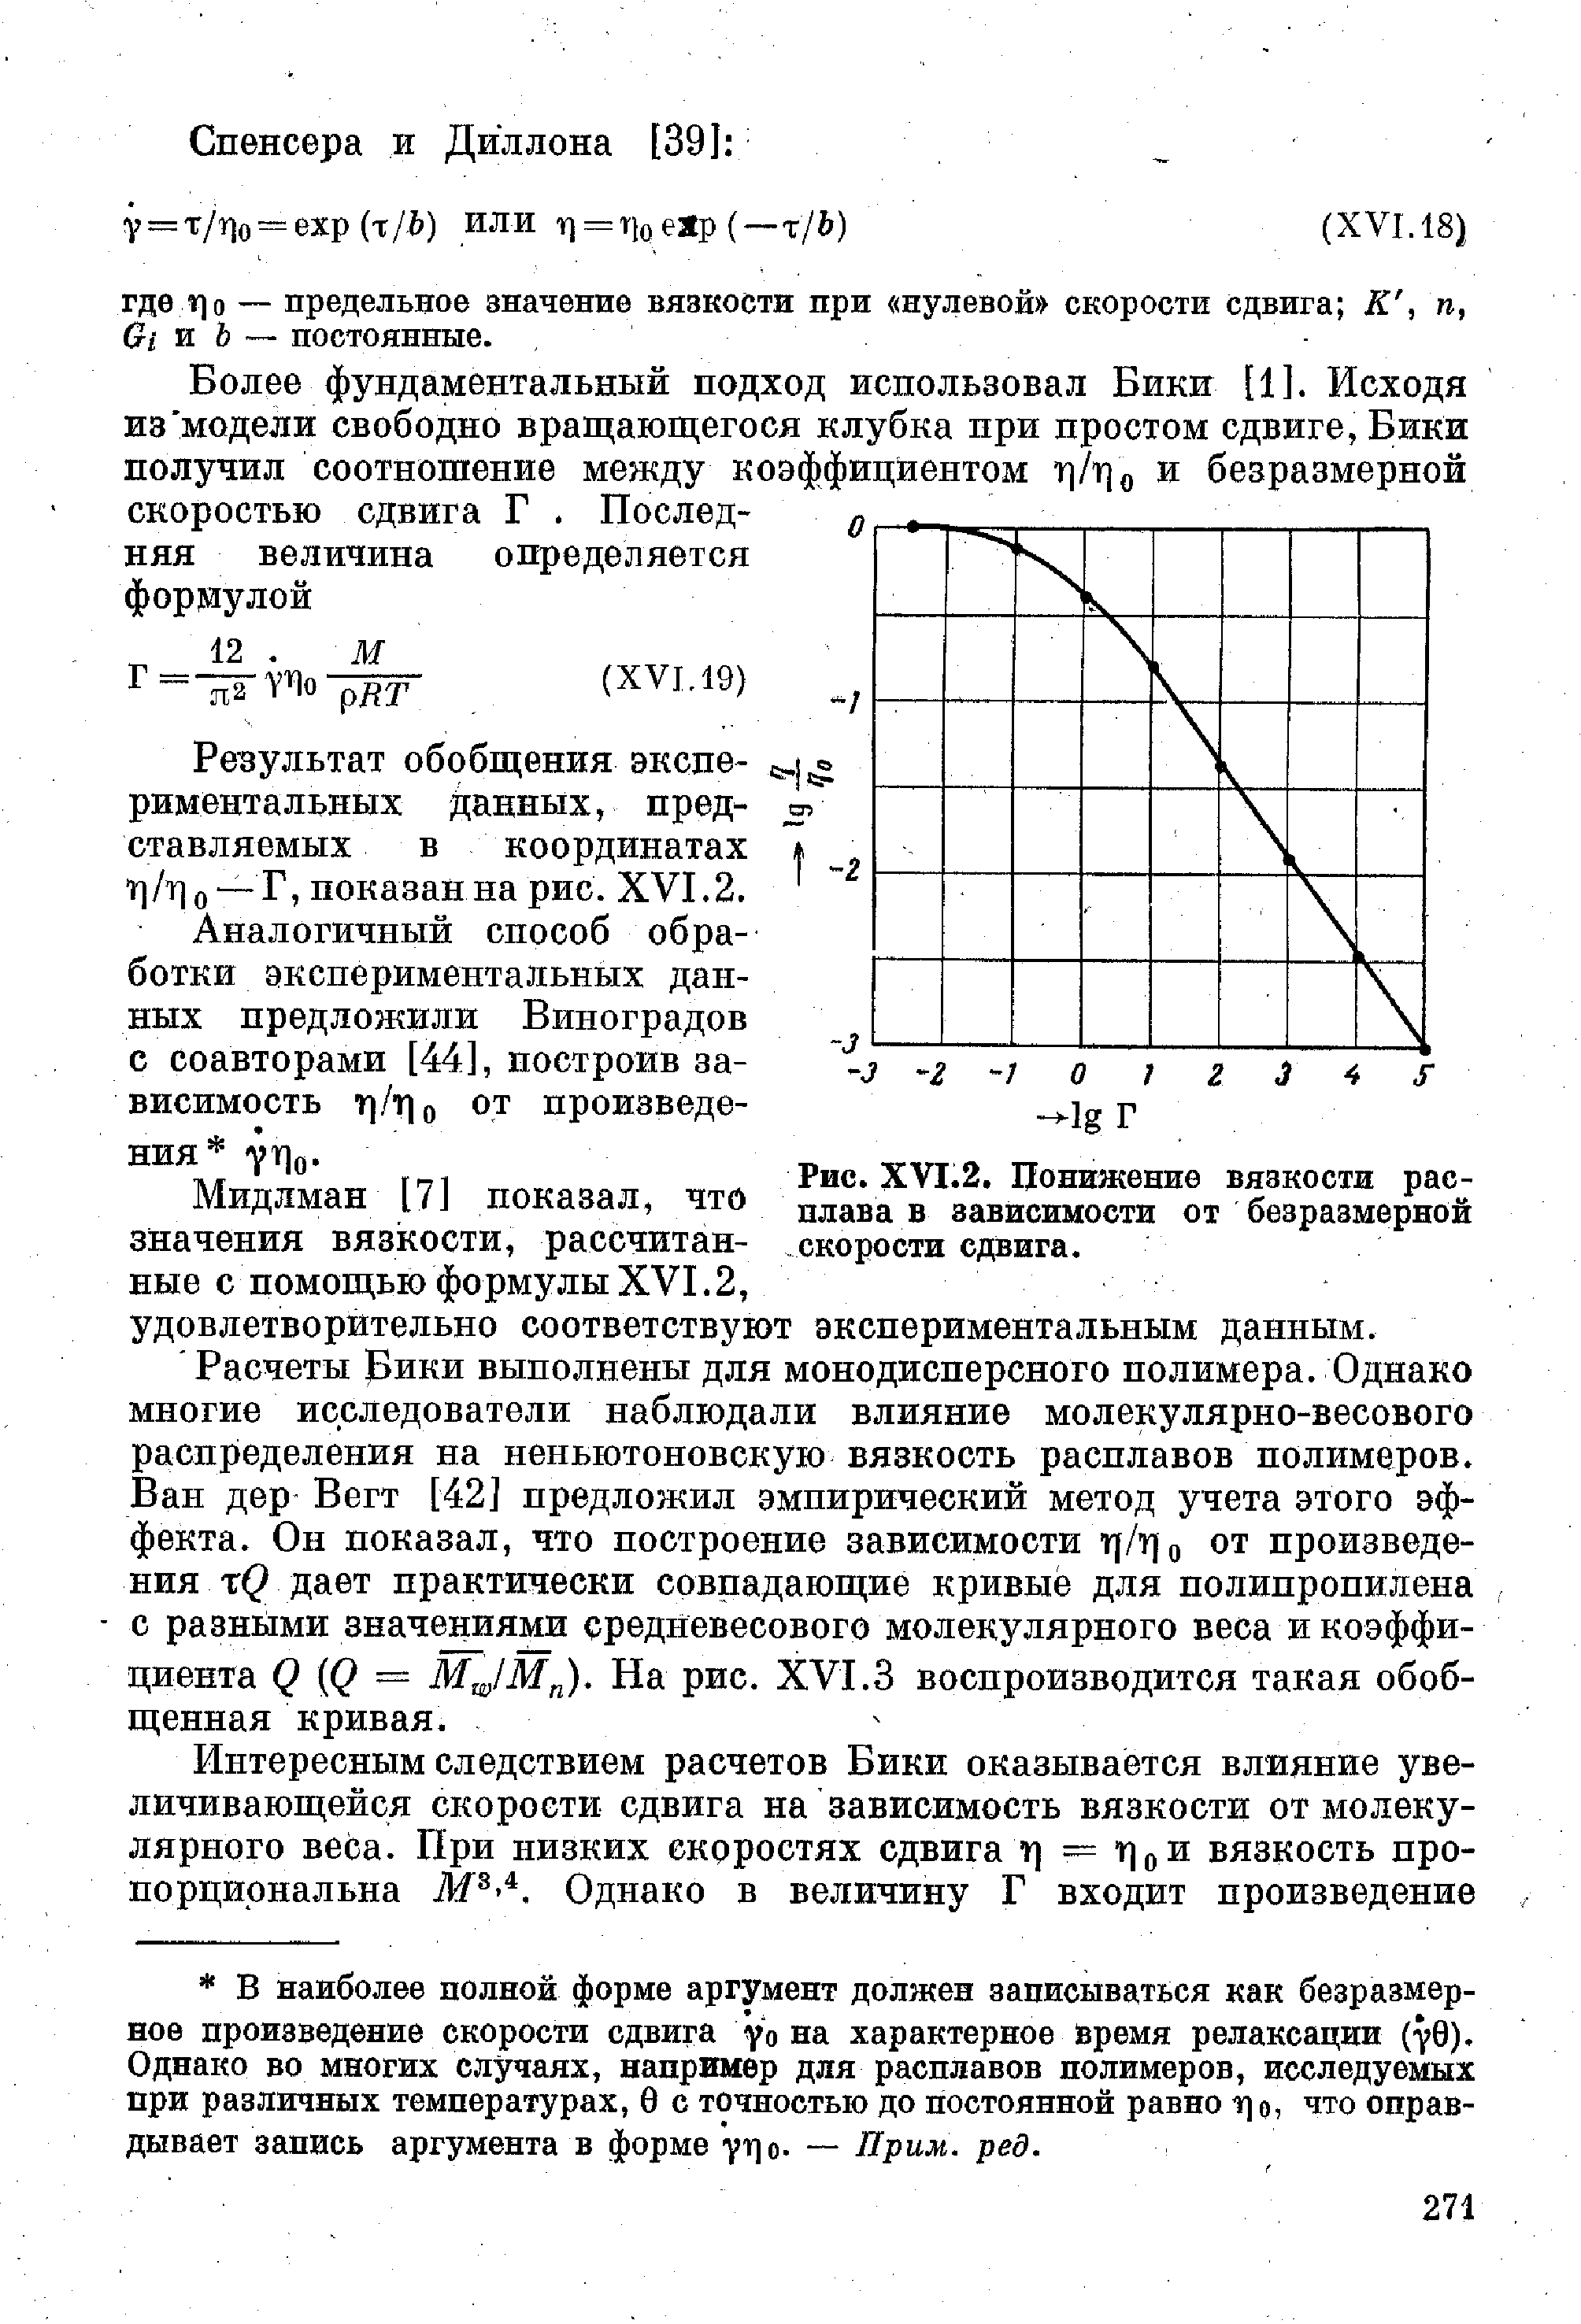 Мидлман [7] показал, что значения вязкости, рассчитанные с помощью формулы XVI.2, удовлетворительно соответствуют экспериментальным данным.